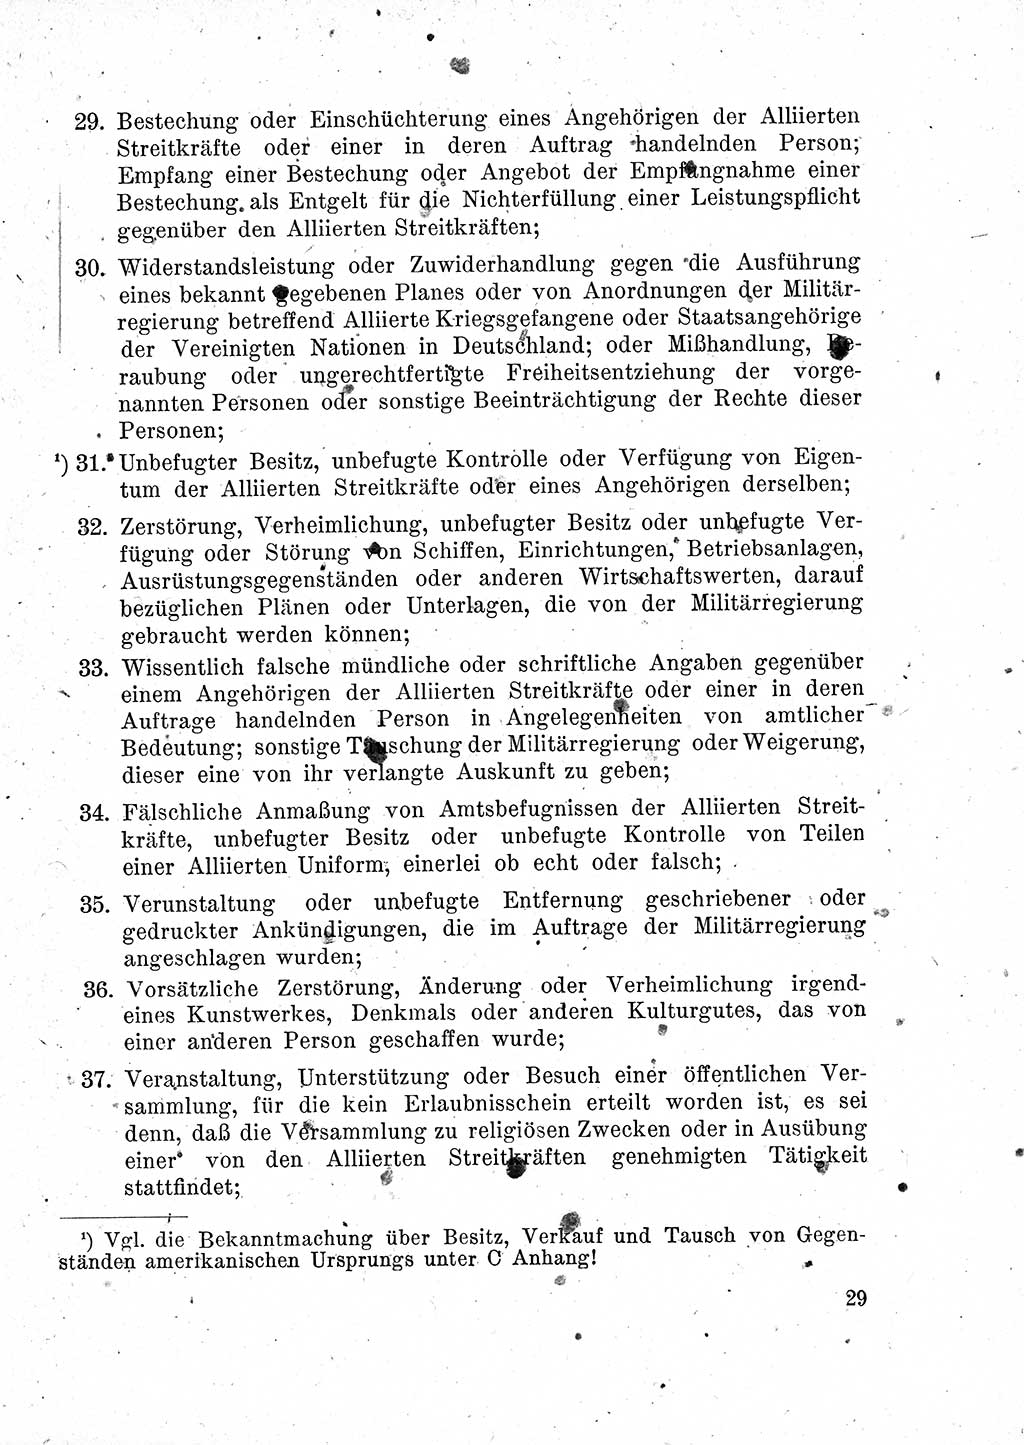 Das Recht der Besatzungsmacht (Deutschland), Proklamationen, Deklerationen, Verordnungen, Gesetze und Bekanntmachungen 1947, Seite 29 (R. Bes. Dtl. 1947, S. 29)